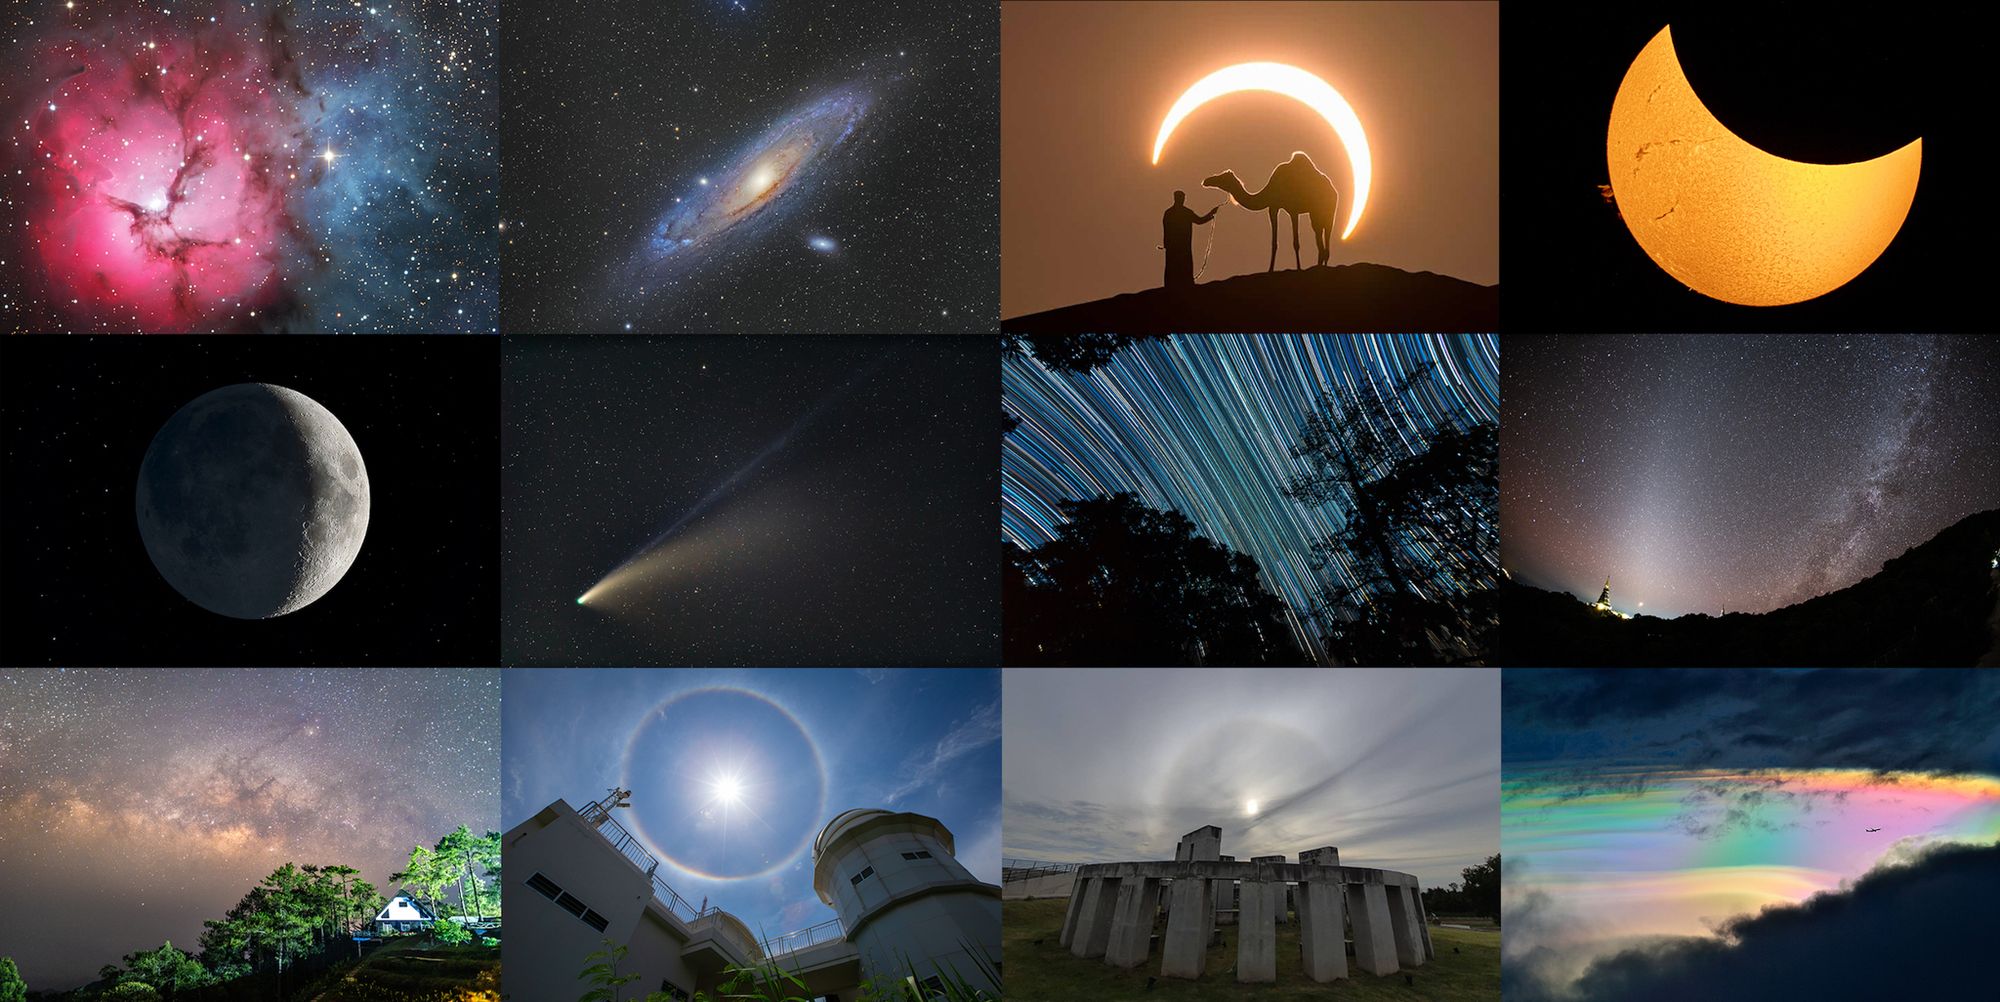 ภาพถ่ายดาราศาสตร์ภาพไหนบ้าง ที่ไม่ควรพลาดร่วมส่งประกวดปีนี้